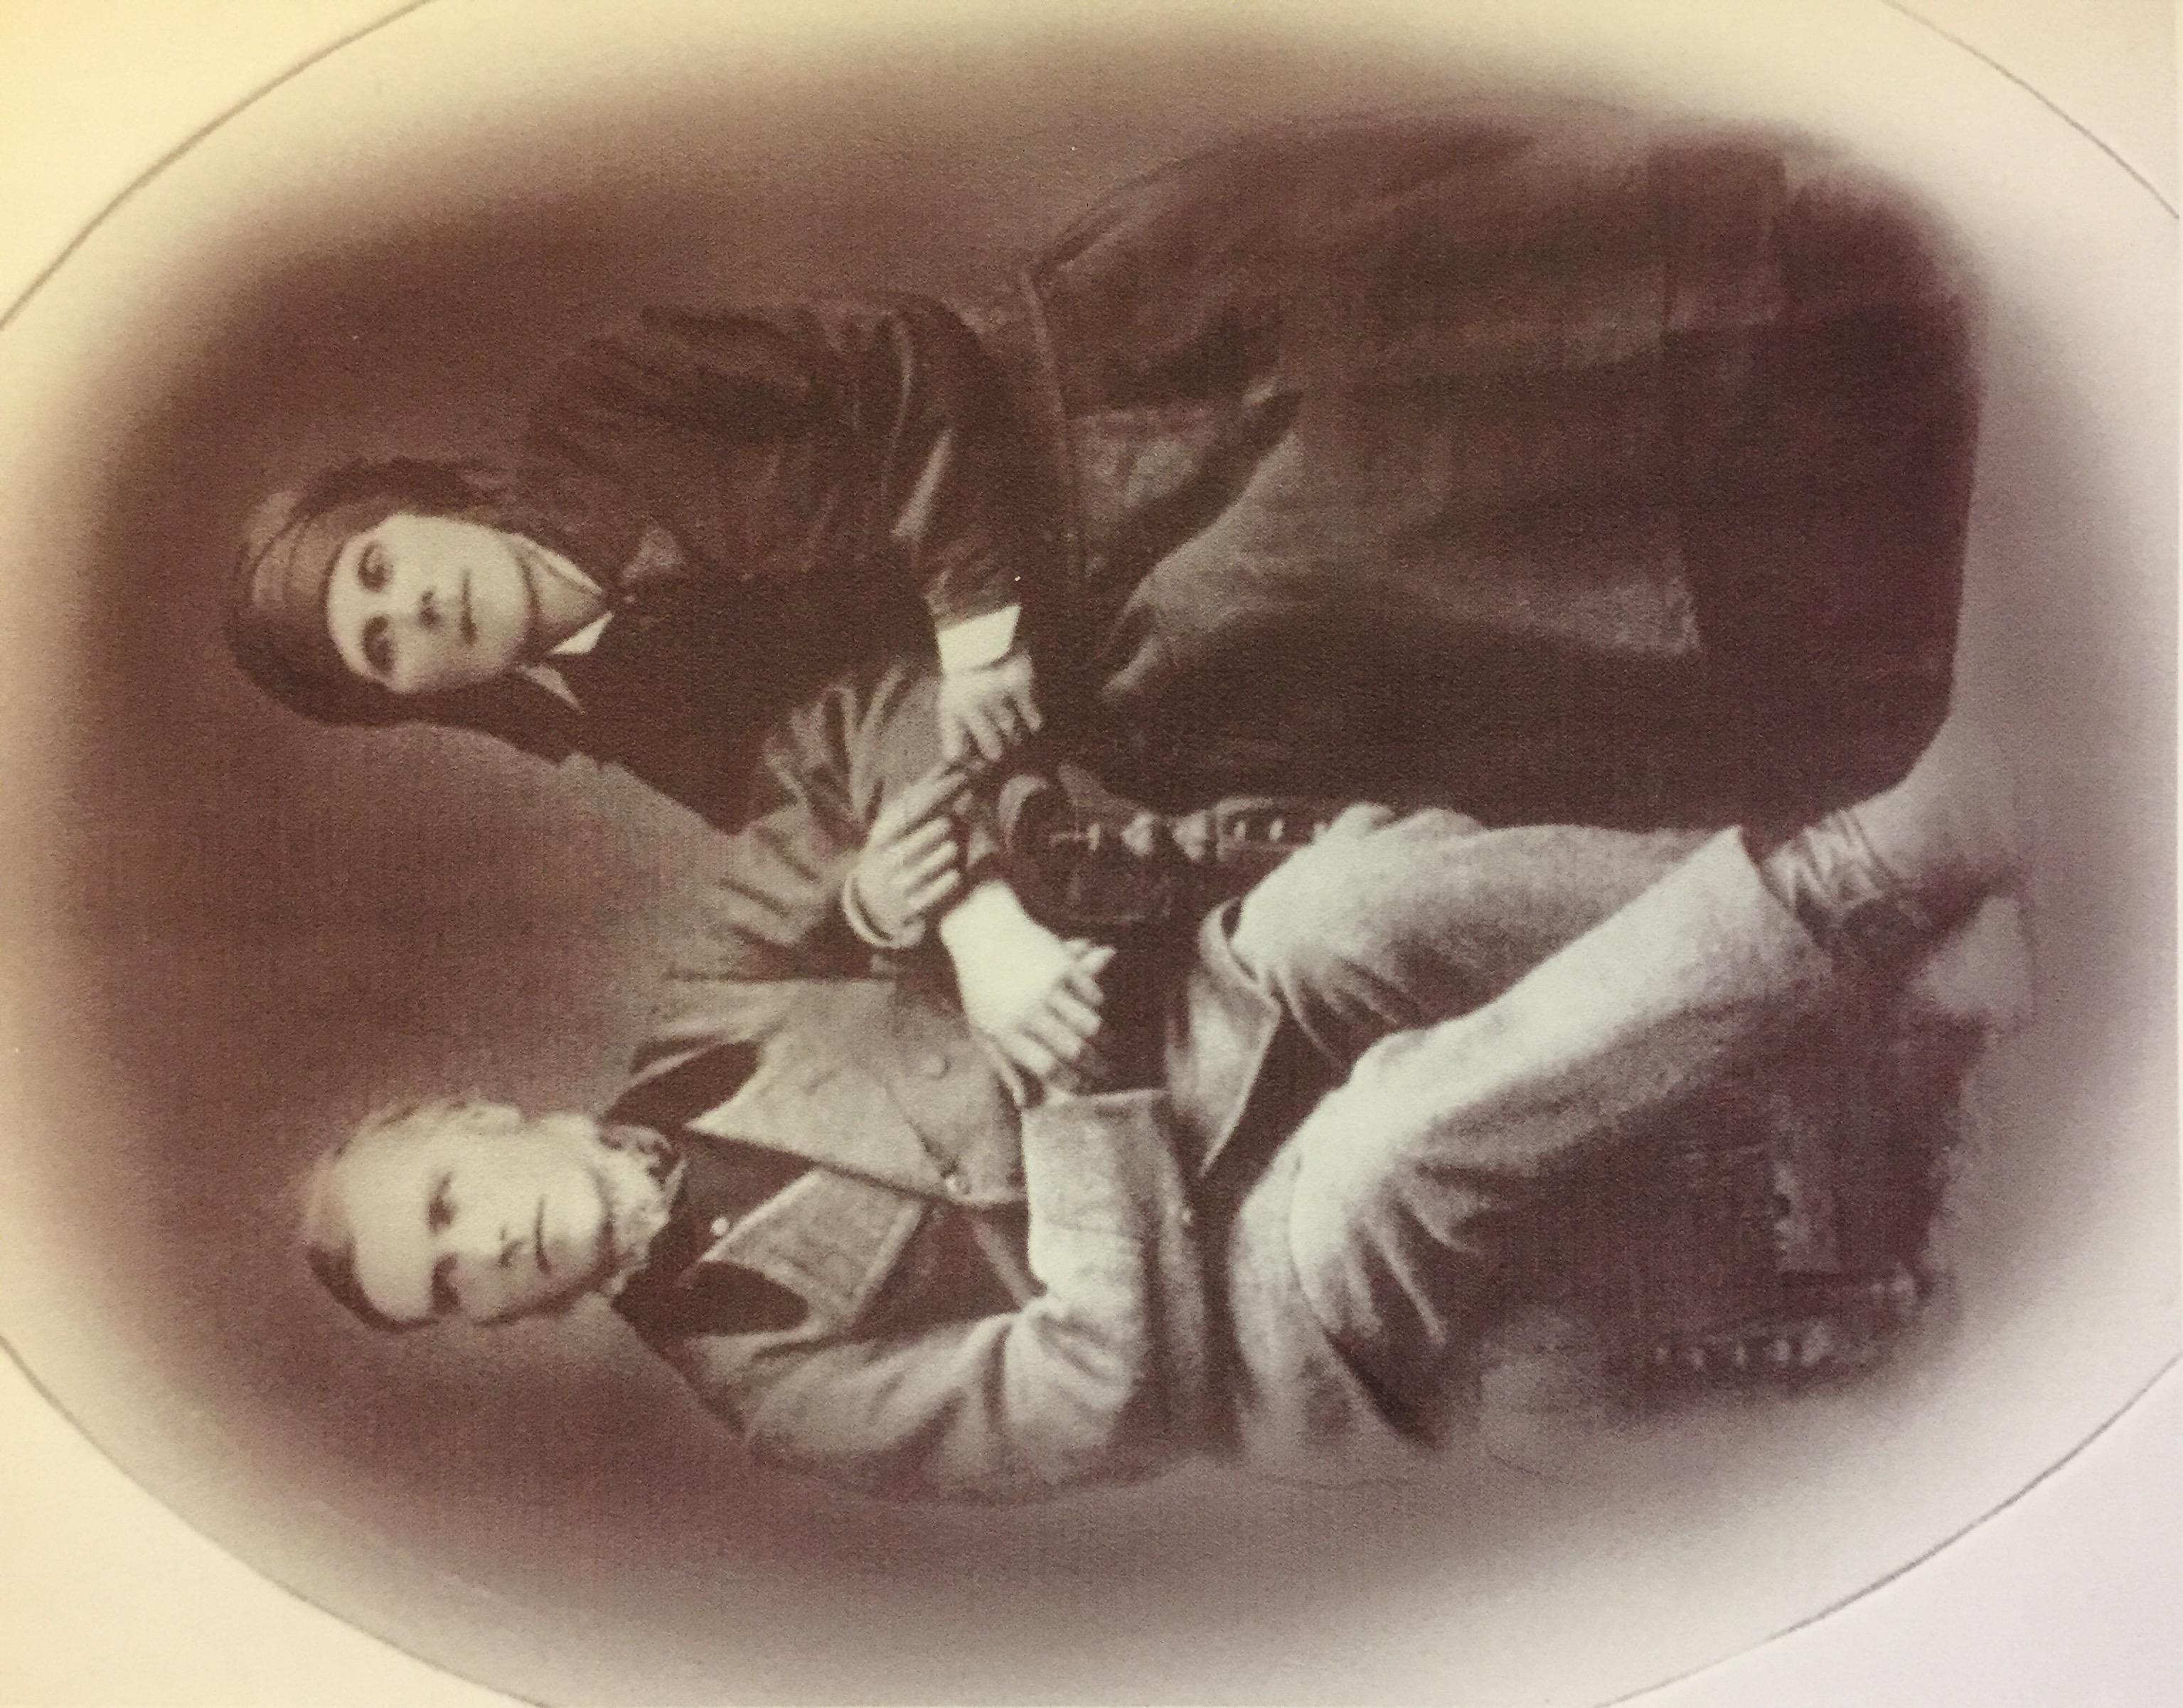 Mormors farfars föräldrar Jöns Olofsson (1823-1902) och Mait Andersdotter (1819-1910)